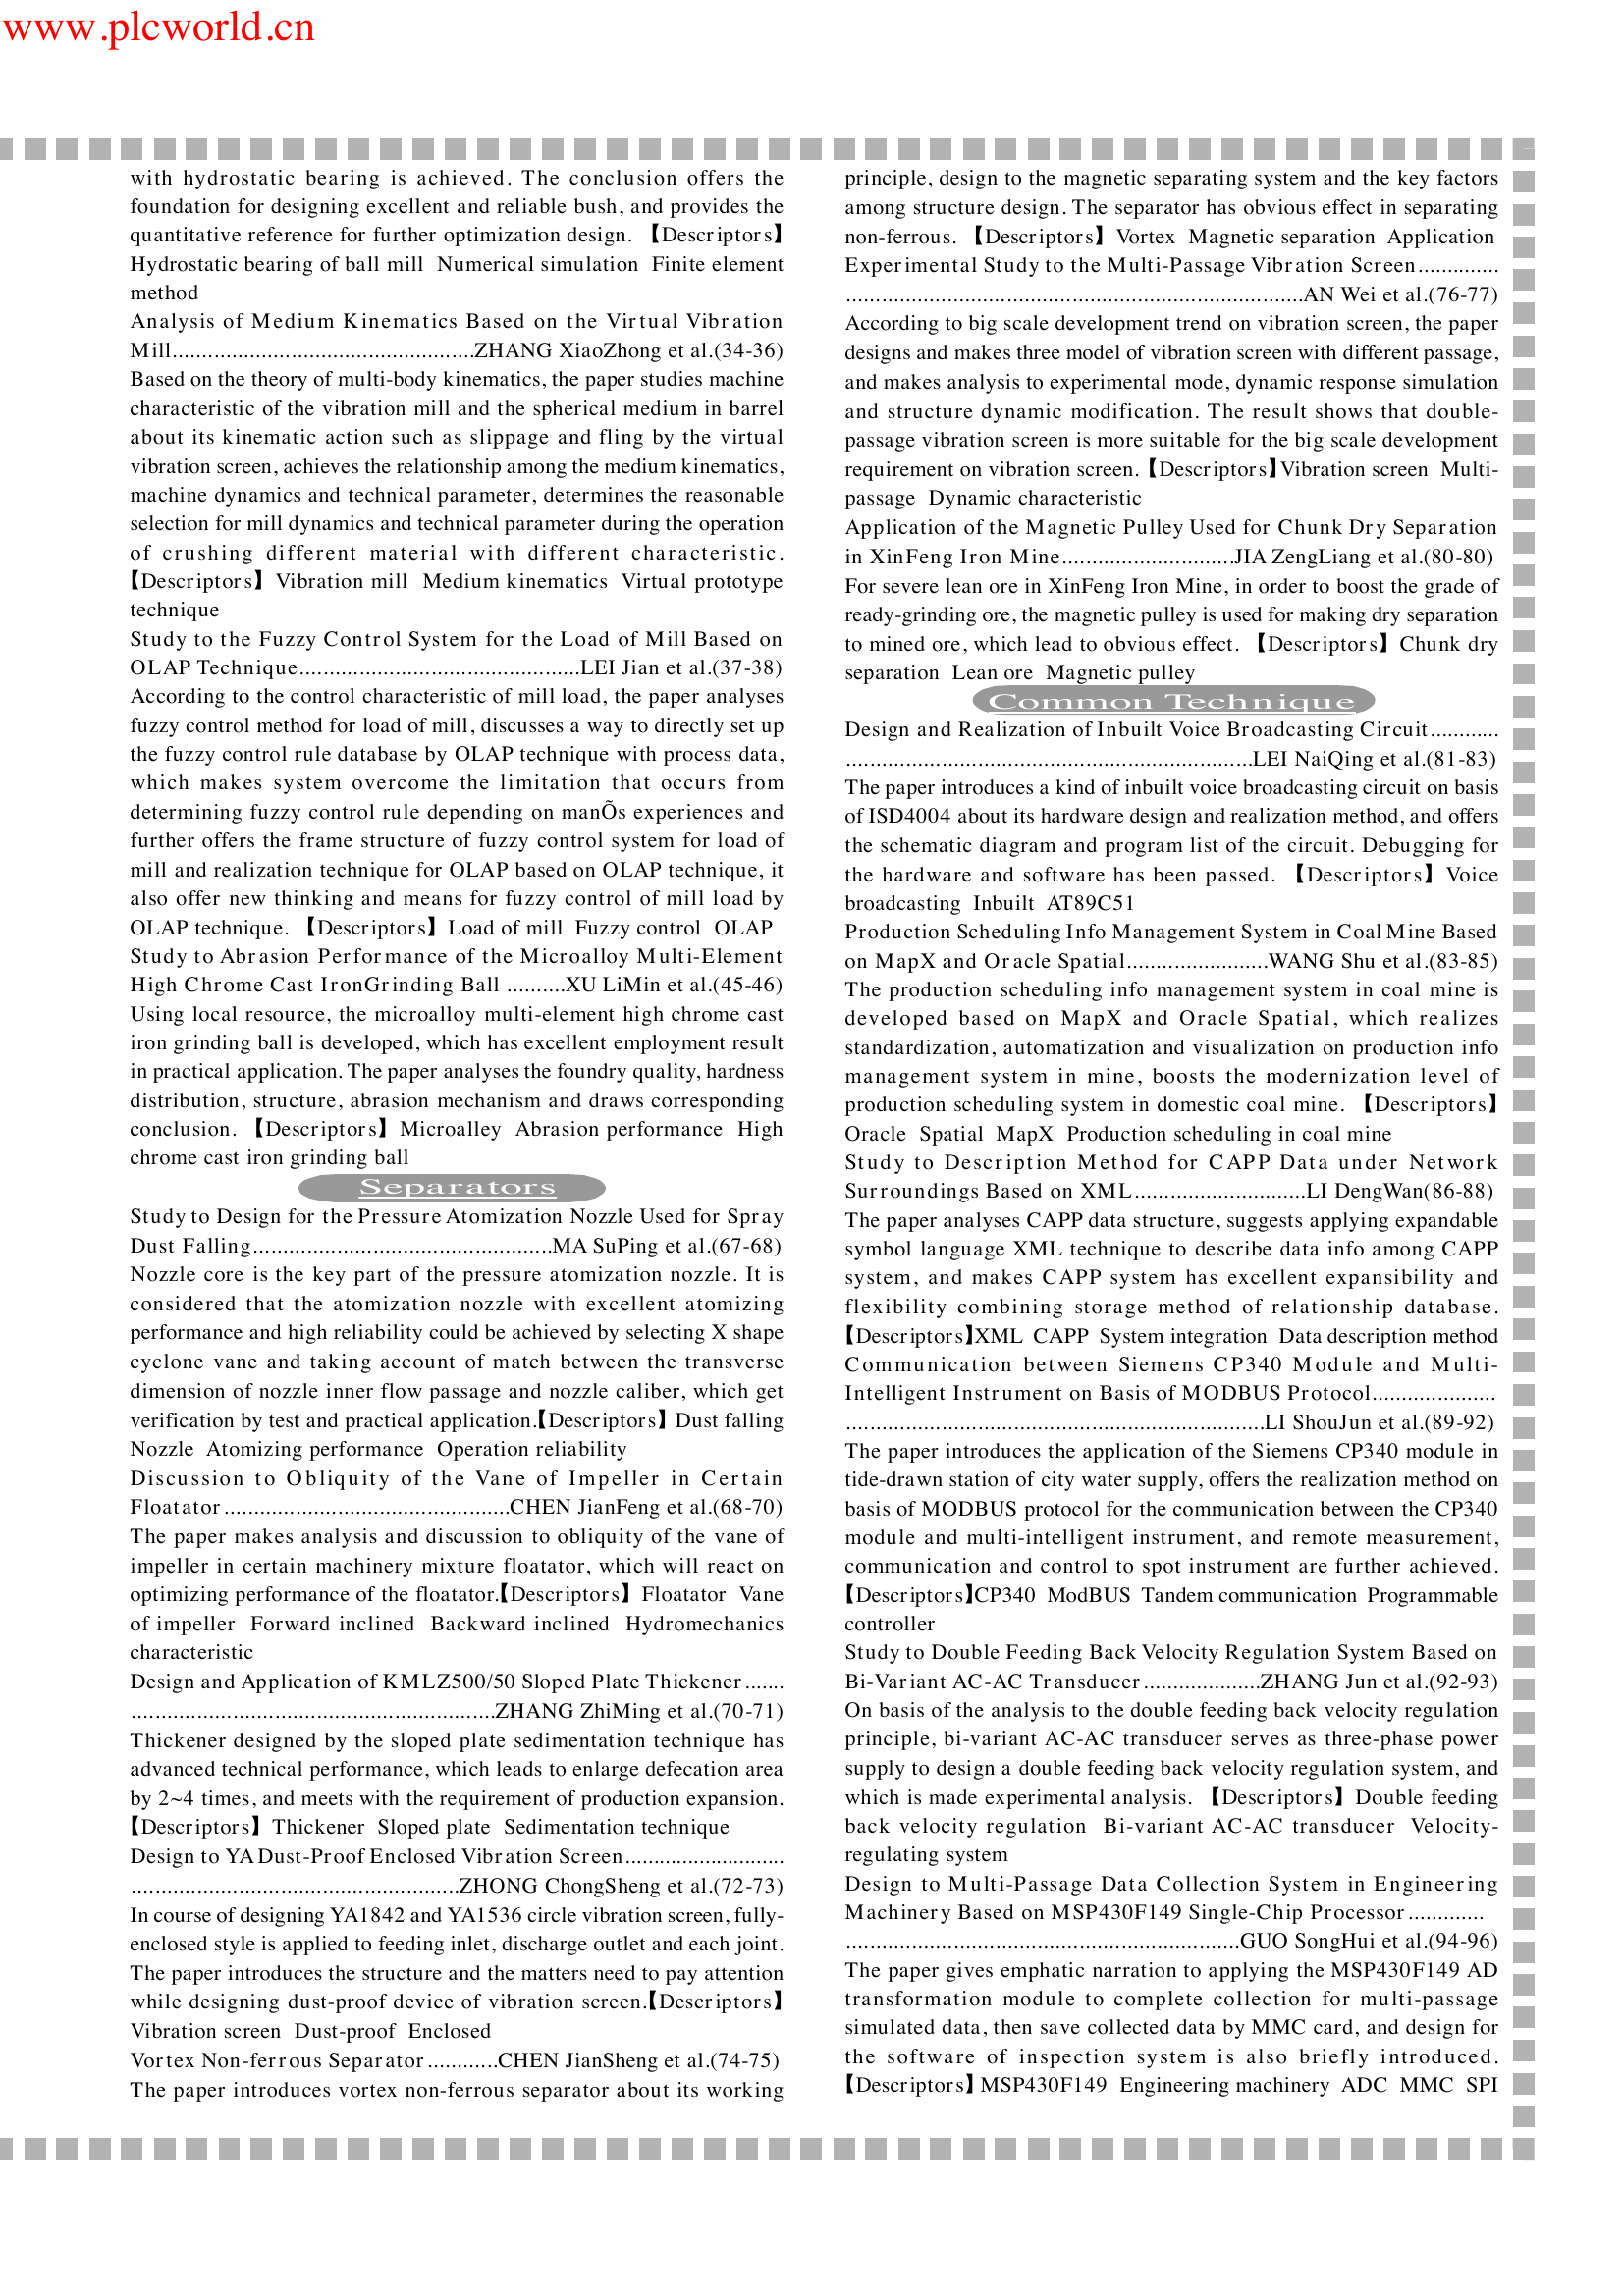 基于MODBUS协议的SiemensCP340模块与多智能仪表之间通讯.pdf-第5页.png